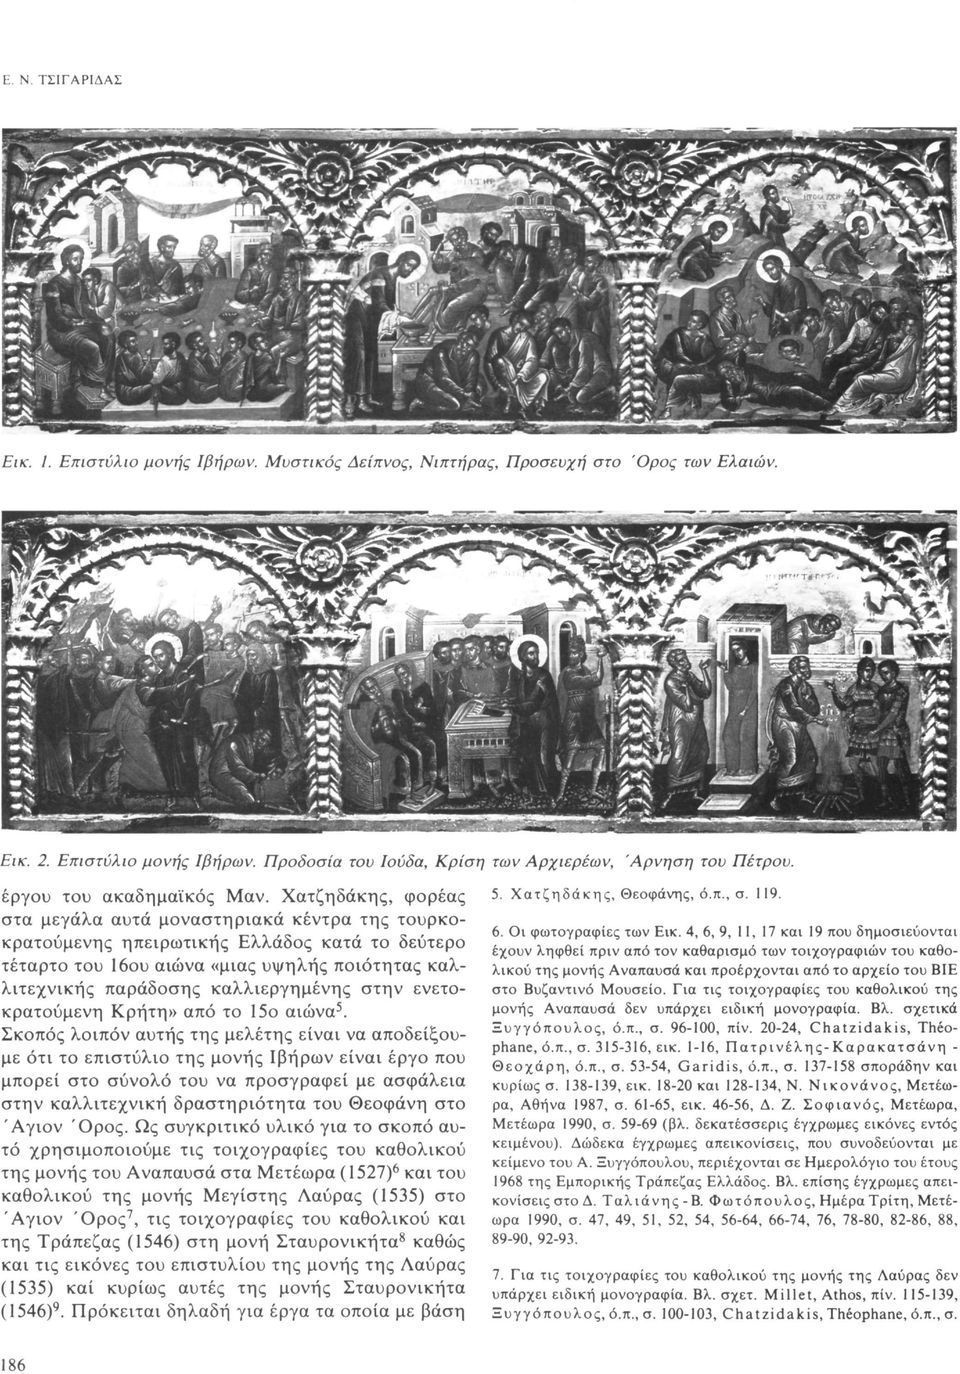 Χατζηδάκης, φορέας στα μεγάλα αυτά μοναστηριακά κέντρα της τουρκοκρατούμενης ηπειρωτικής Ελλάδος κατά το δεύτερο τέταρτο του 16ου αιώνα «μιας υψηλής ποιότητας καλλιτεχνικής παράδοσης καλλιεργημένης